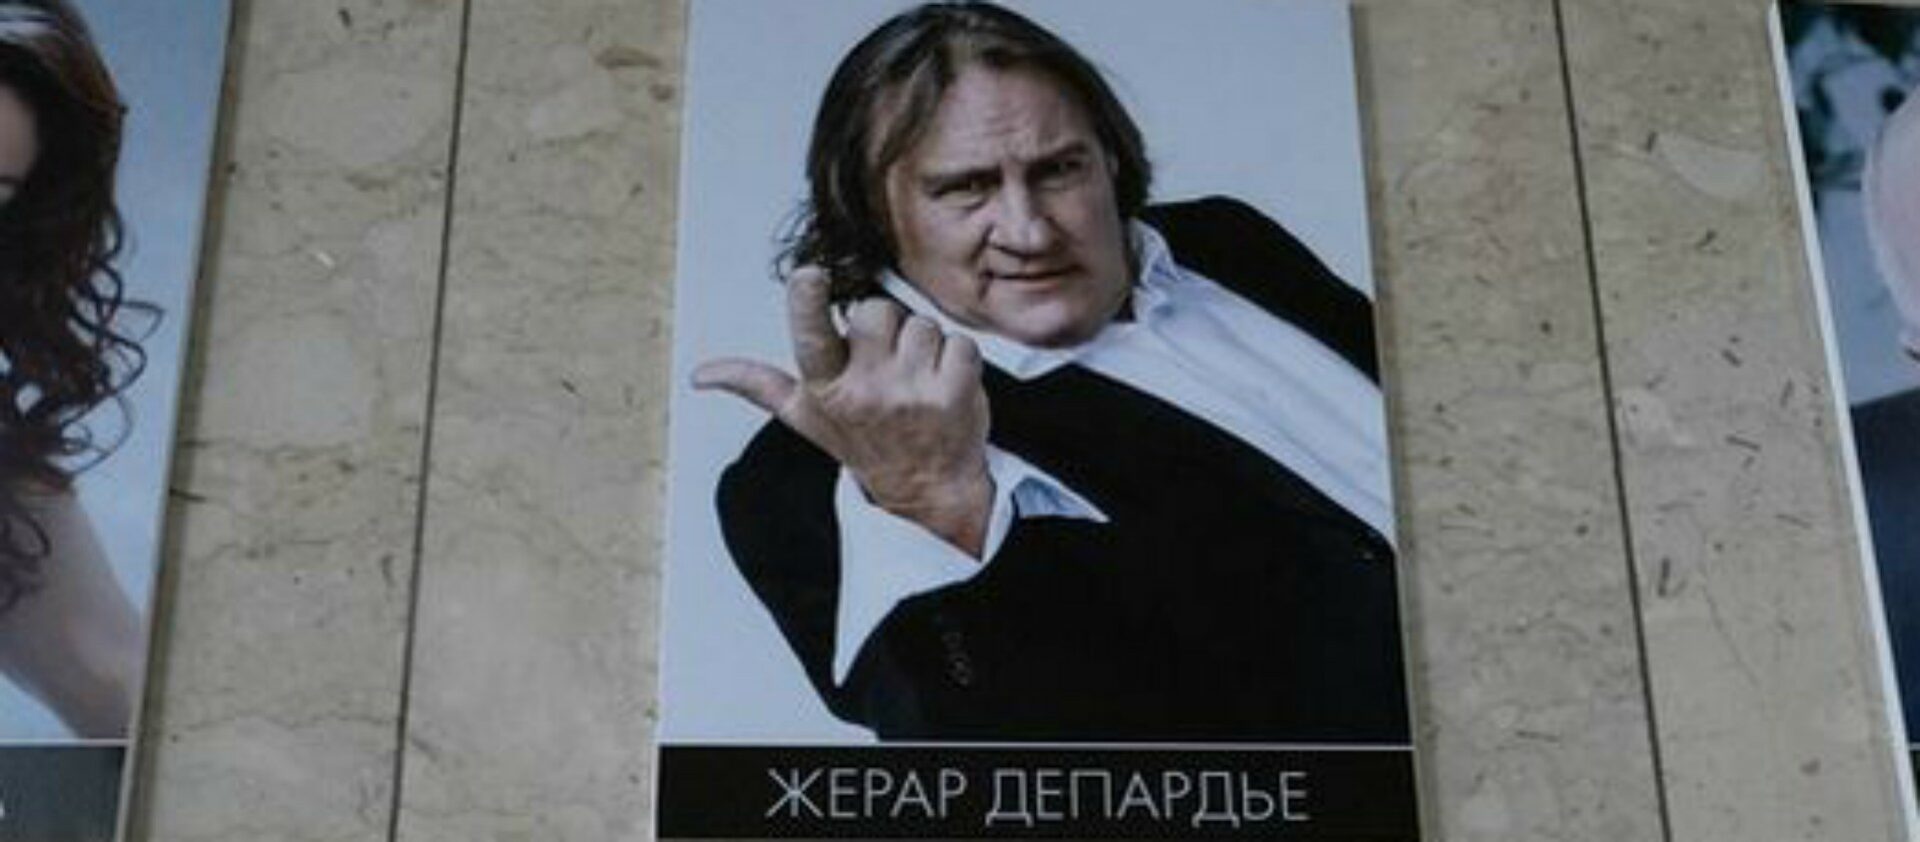 Gégé Depardieu, héros russe | petri matikainen Flickr